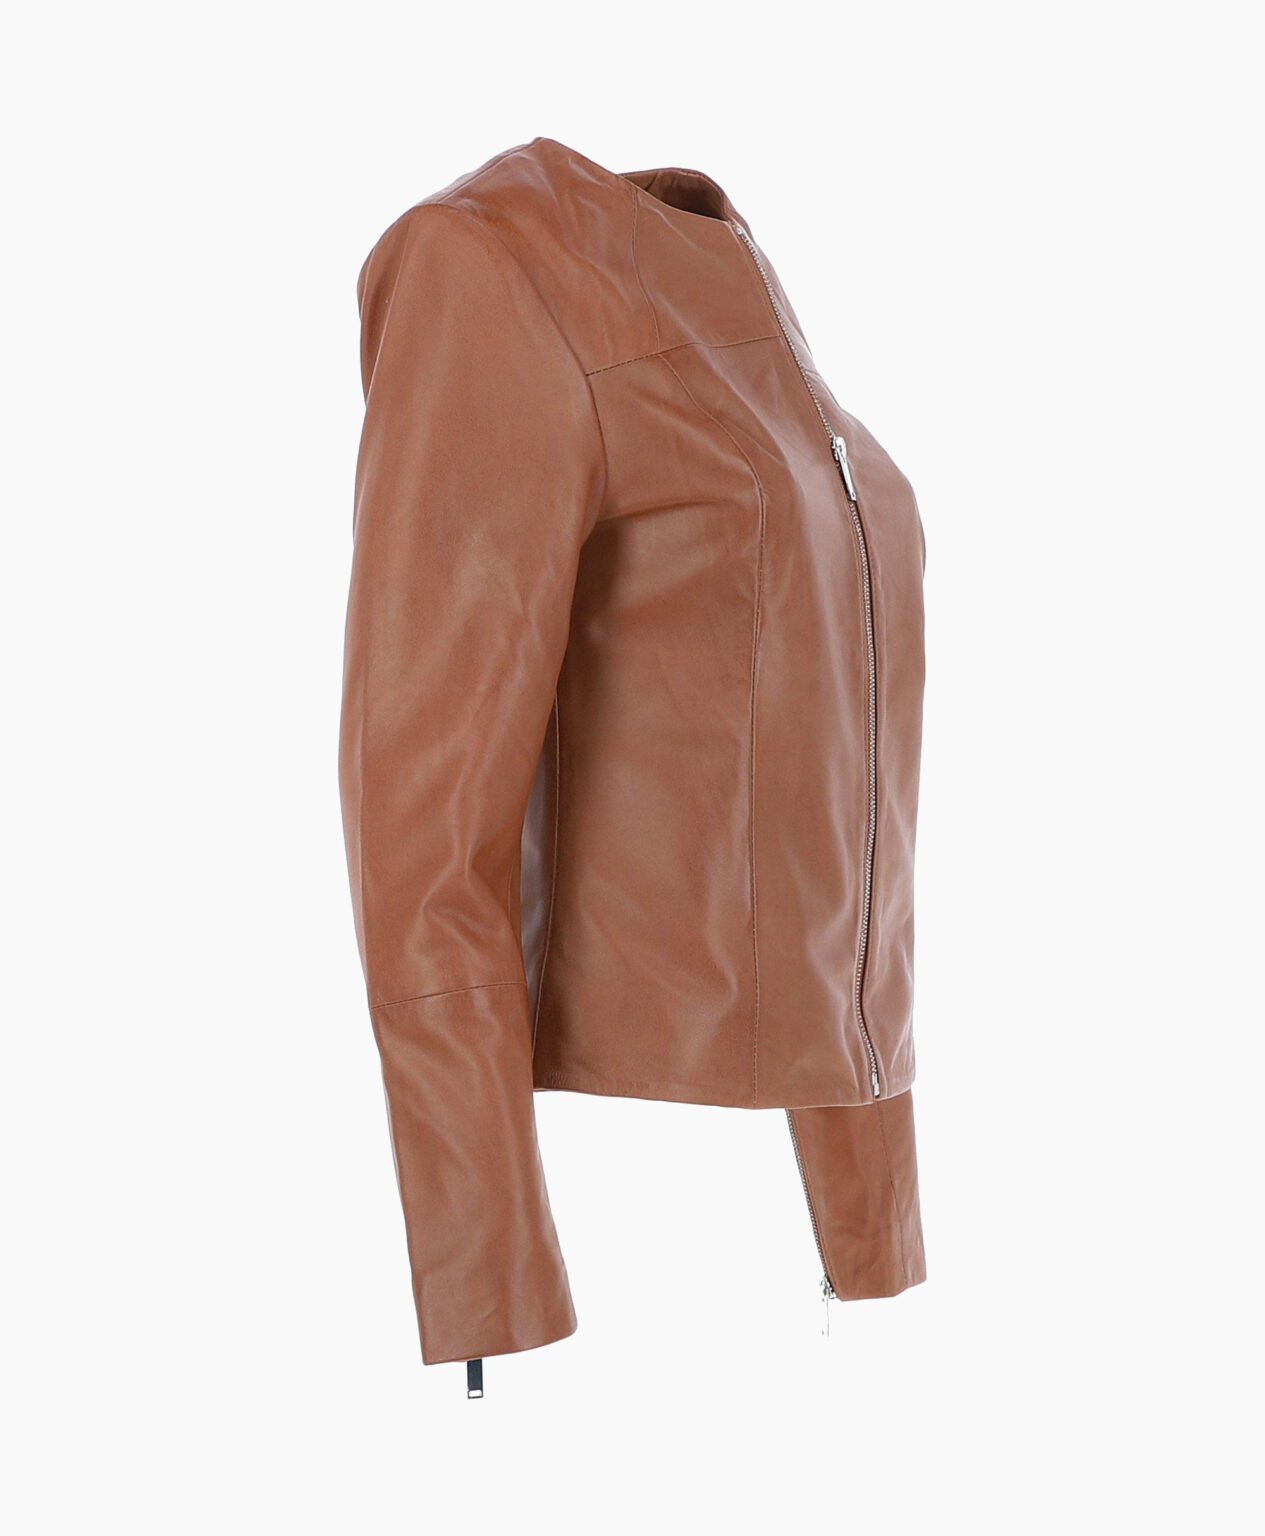 vogue-jacket-leather-fashion-jacket-tan-elizabeth-image203